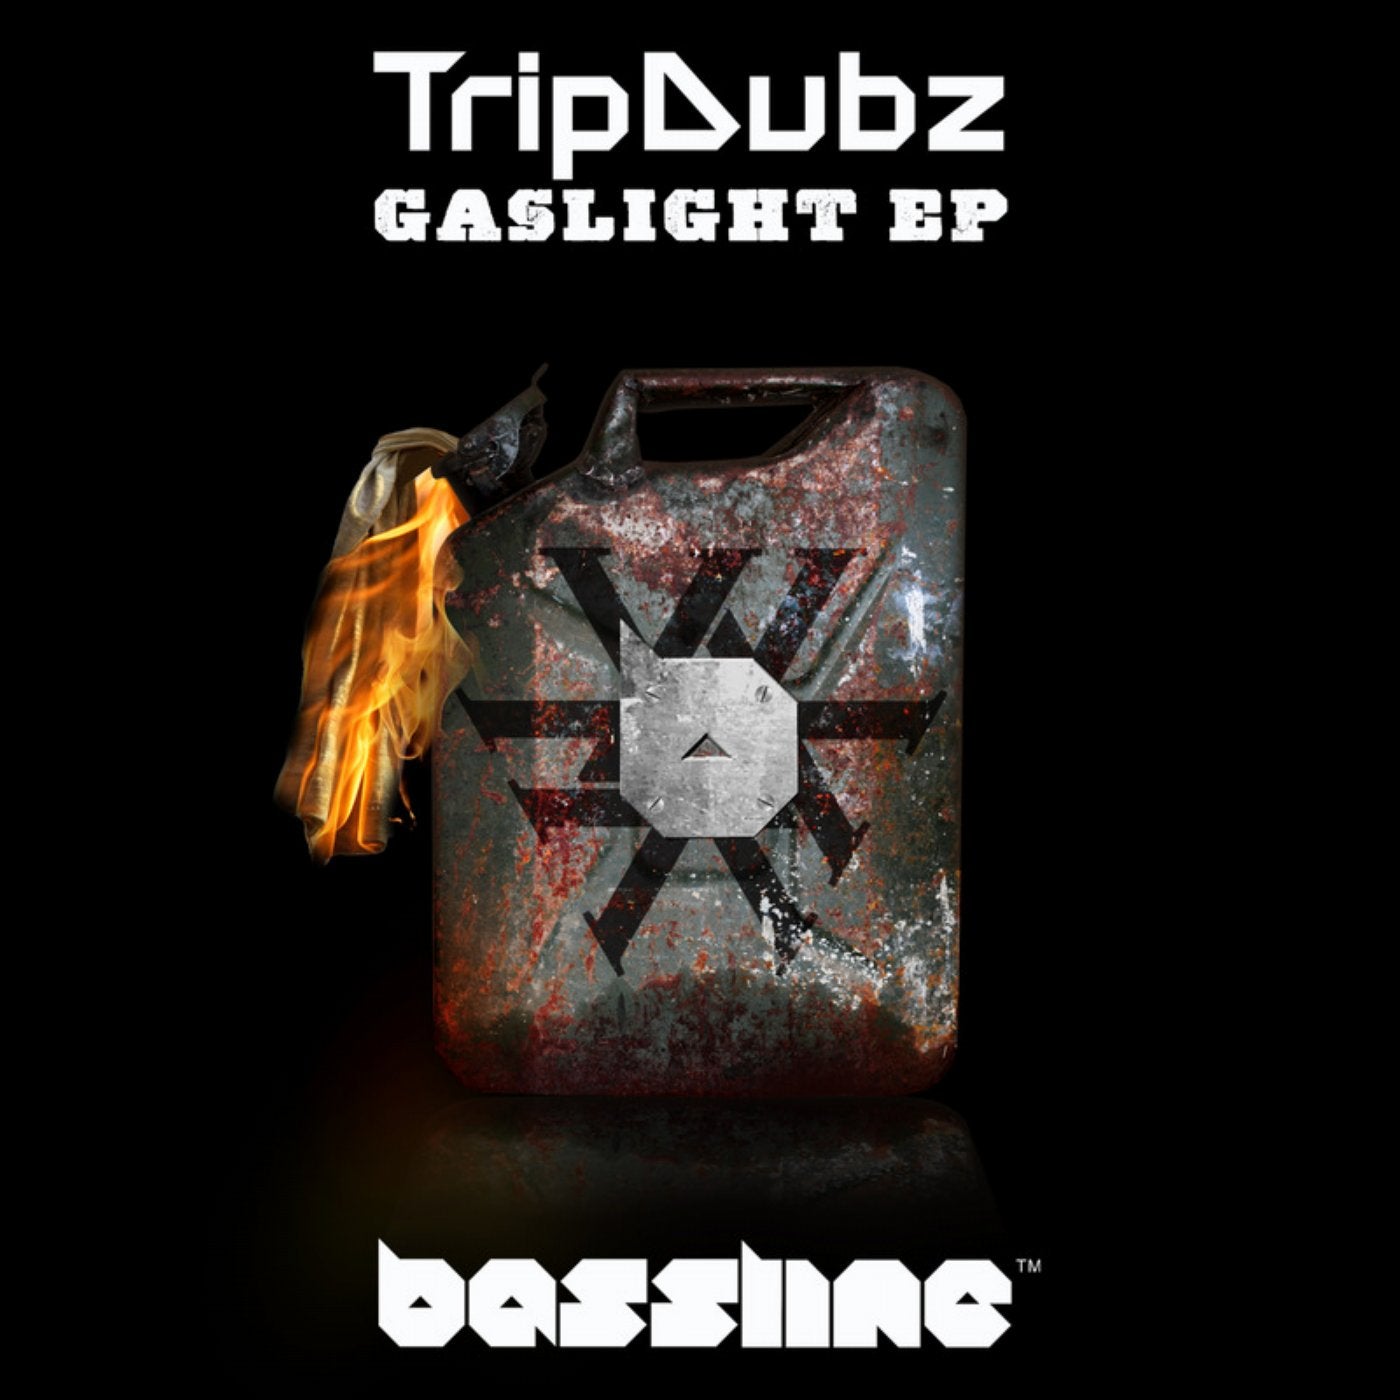 Gaslight EP